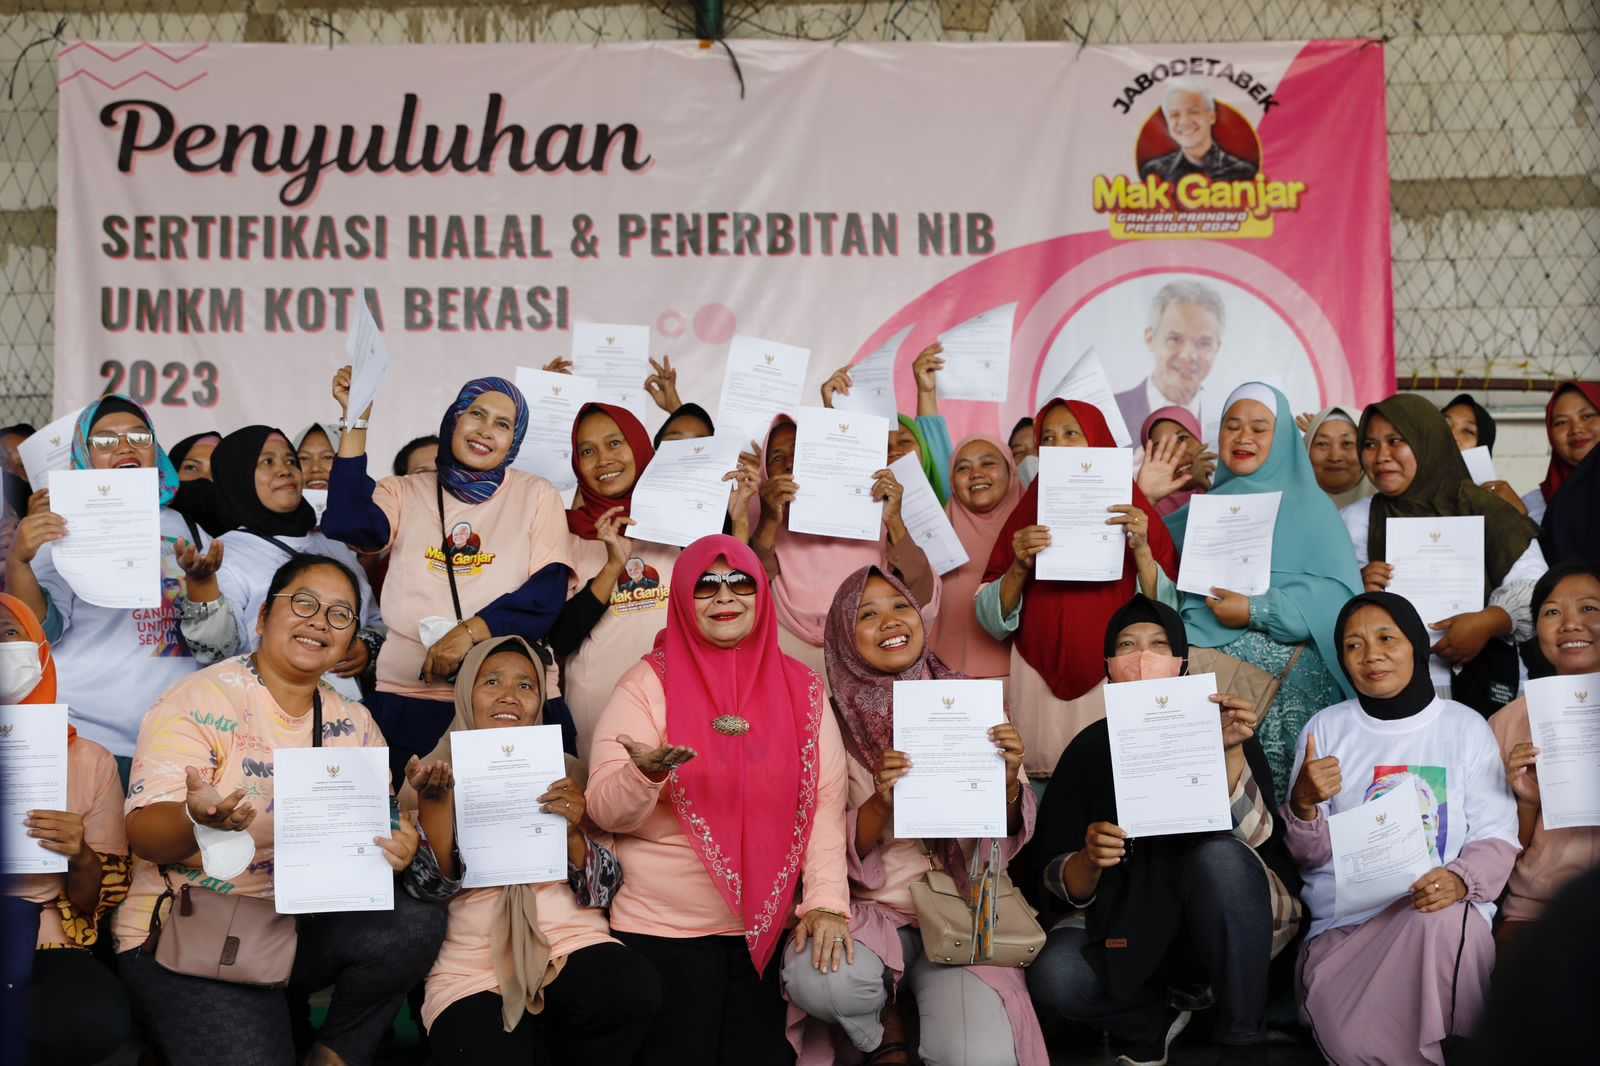 Mak Ganjar Jabodetabek Gelar Penyuluhan Sertifikasi Halal dan Penerbitan NIB untuk Pelaku UMKM di Bekasi 3